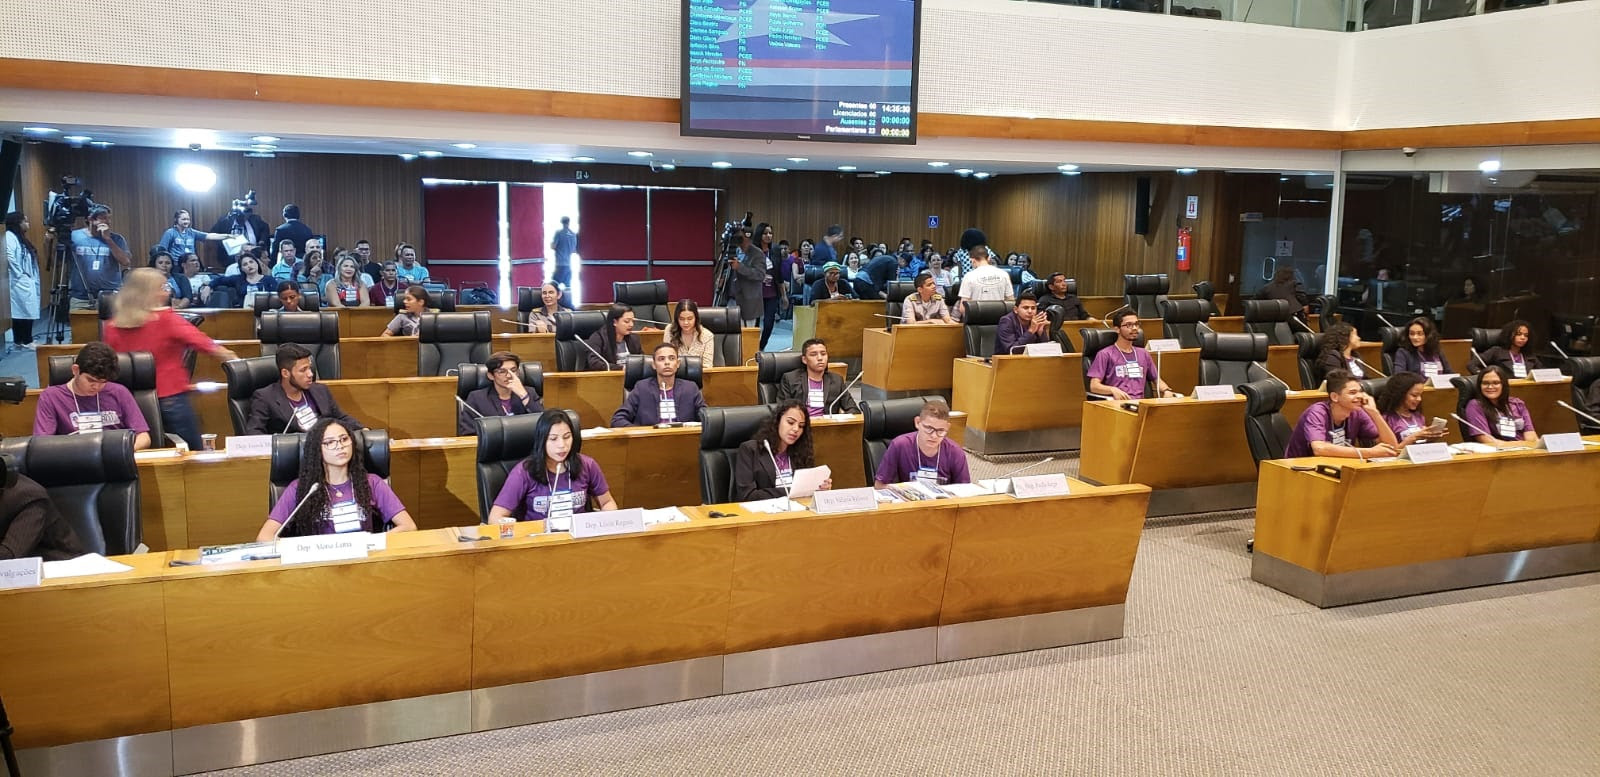 Sessão plenária do Parlamento Estudantil com os 22 deputados estudantes, representando diversos municípios 